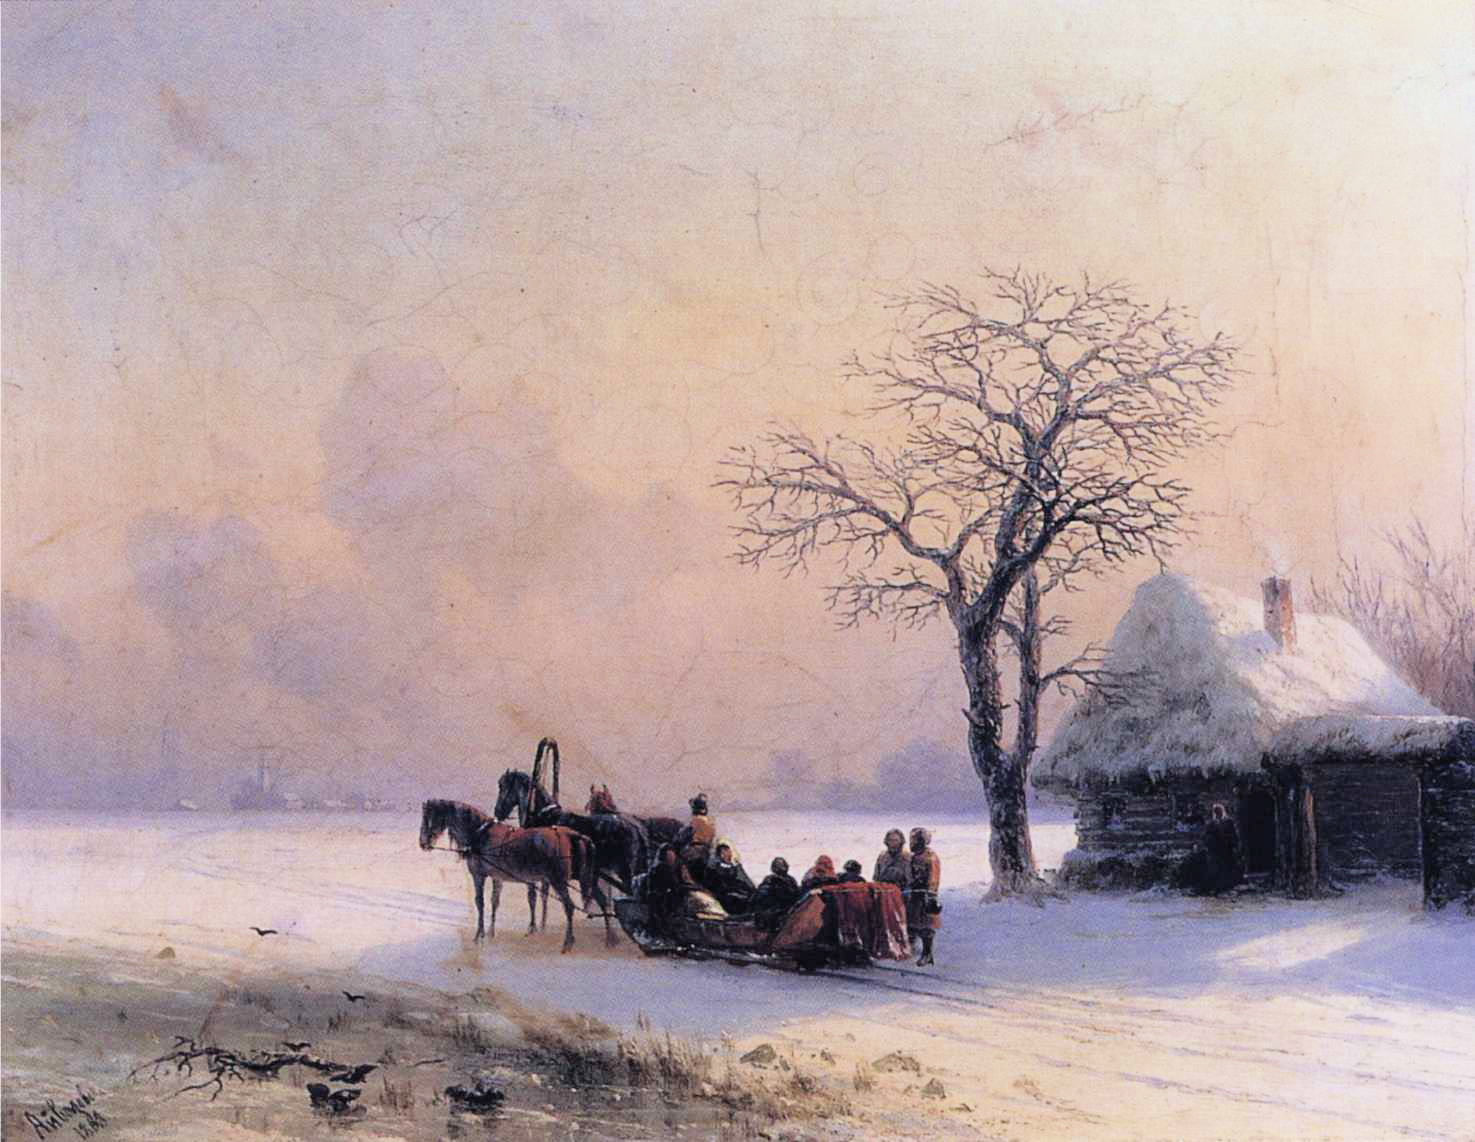 Winter Scene in Little Russia (1868).